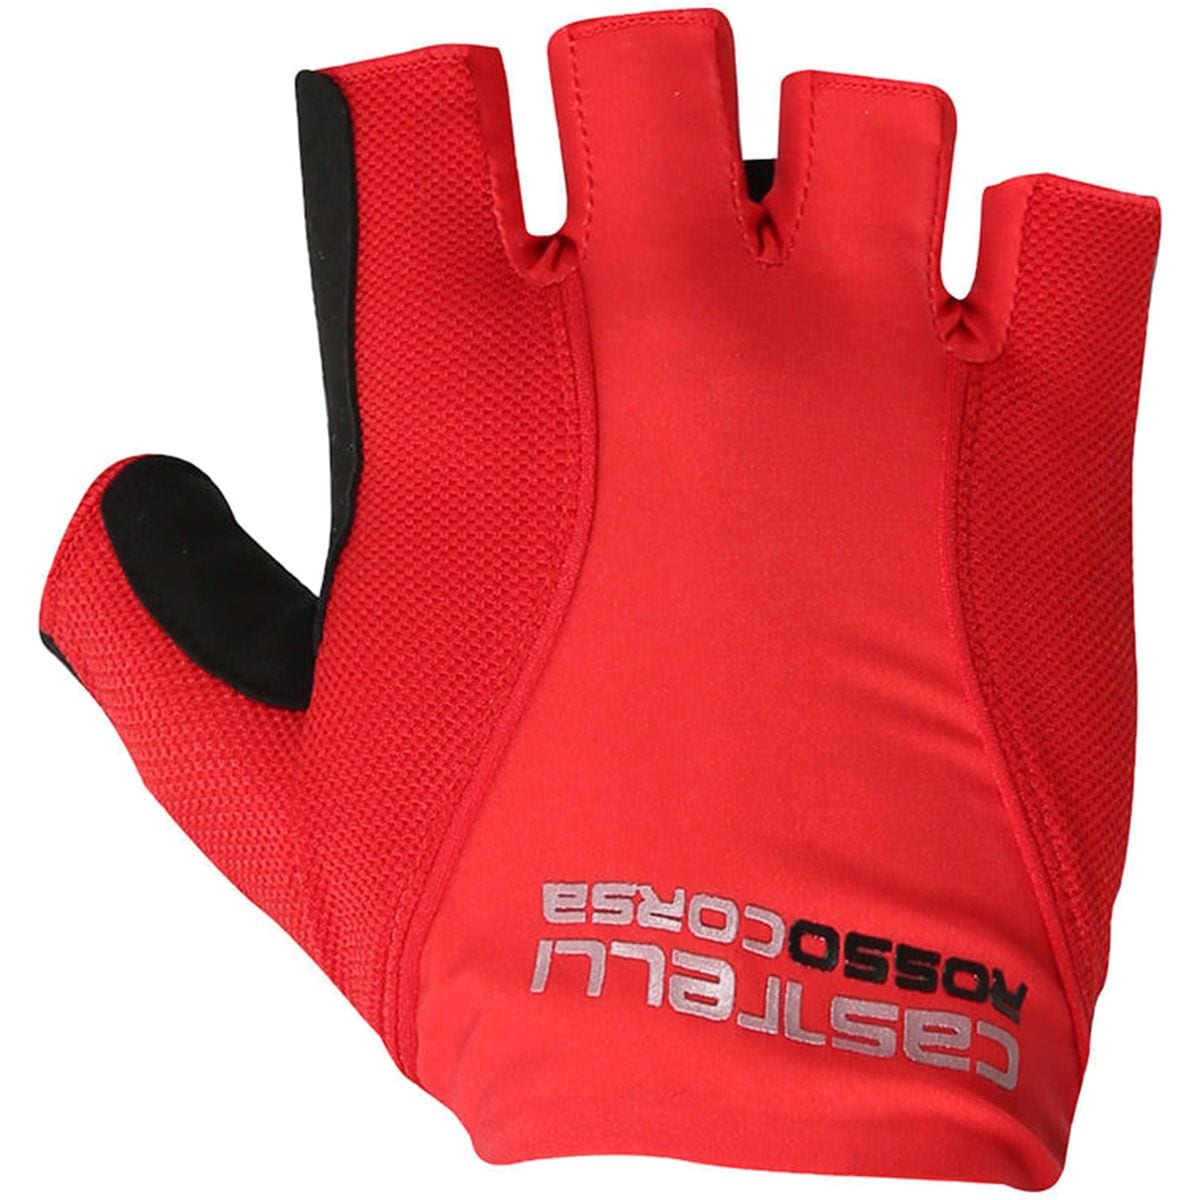 Castelli Rosso Corsa Pave Glove Men's